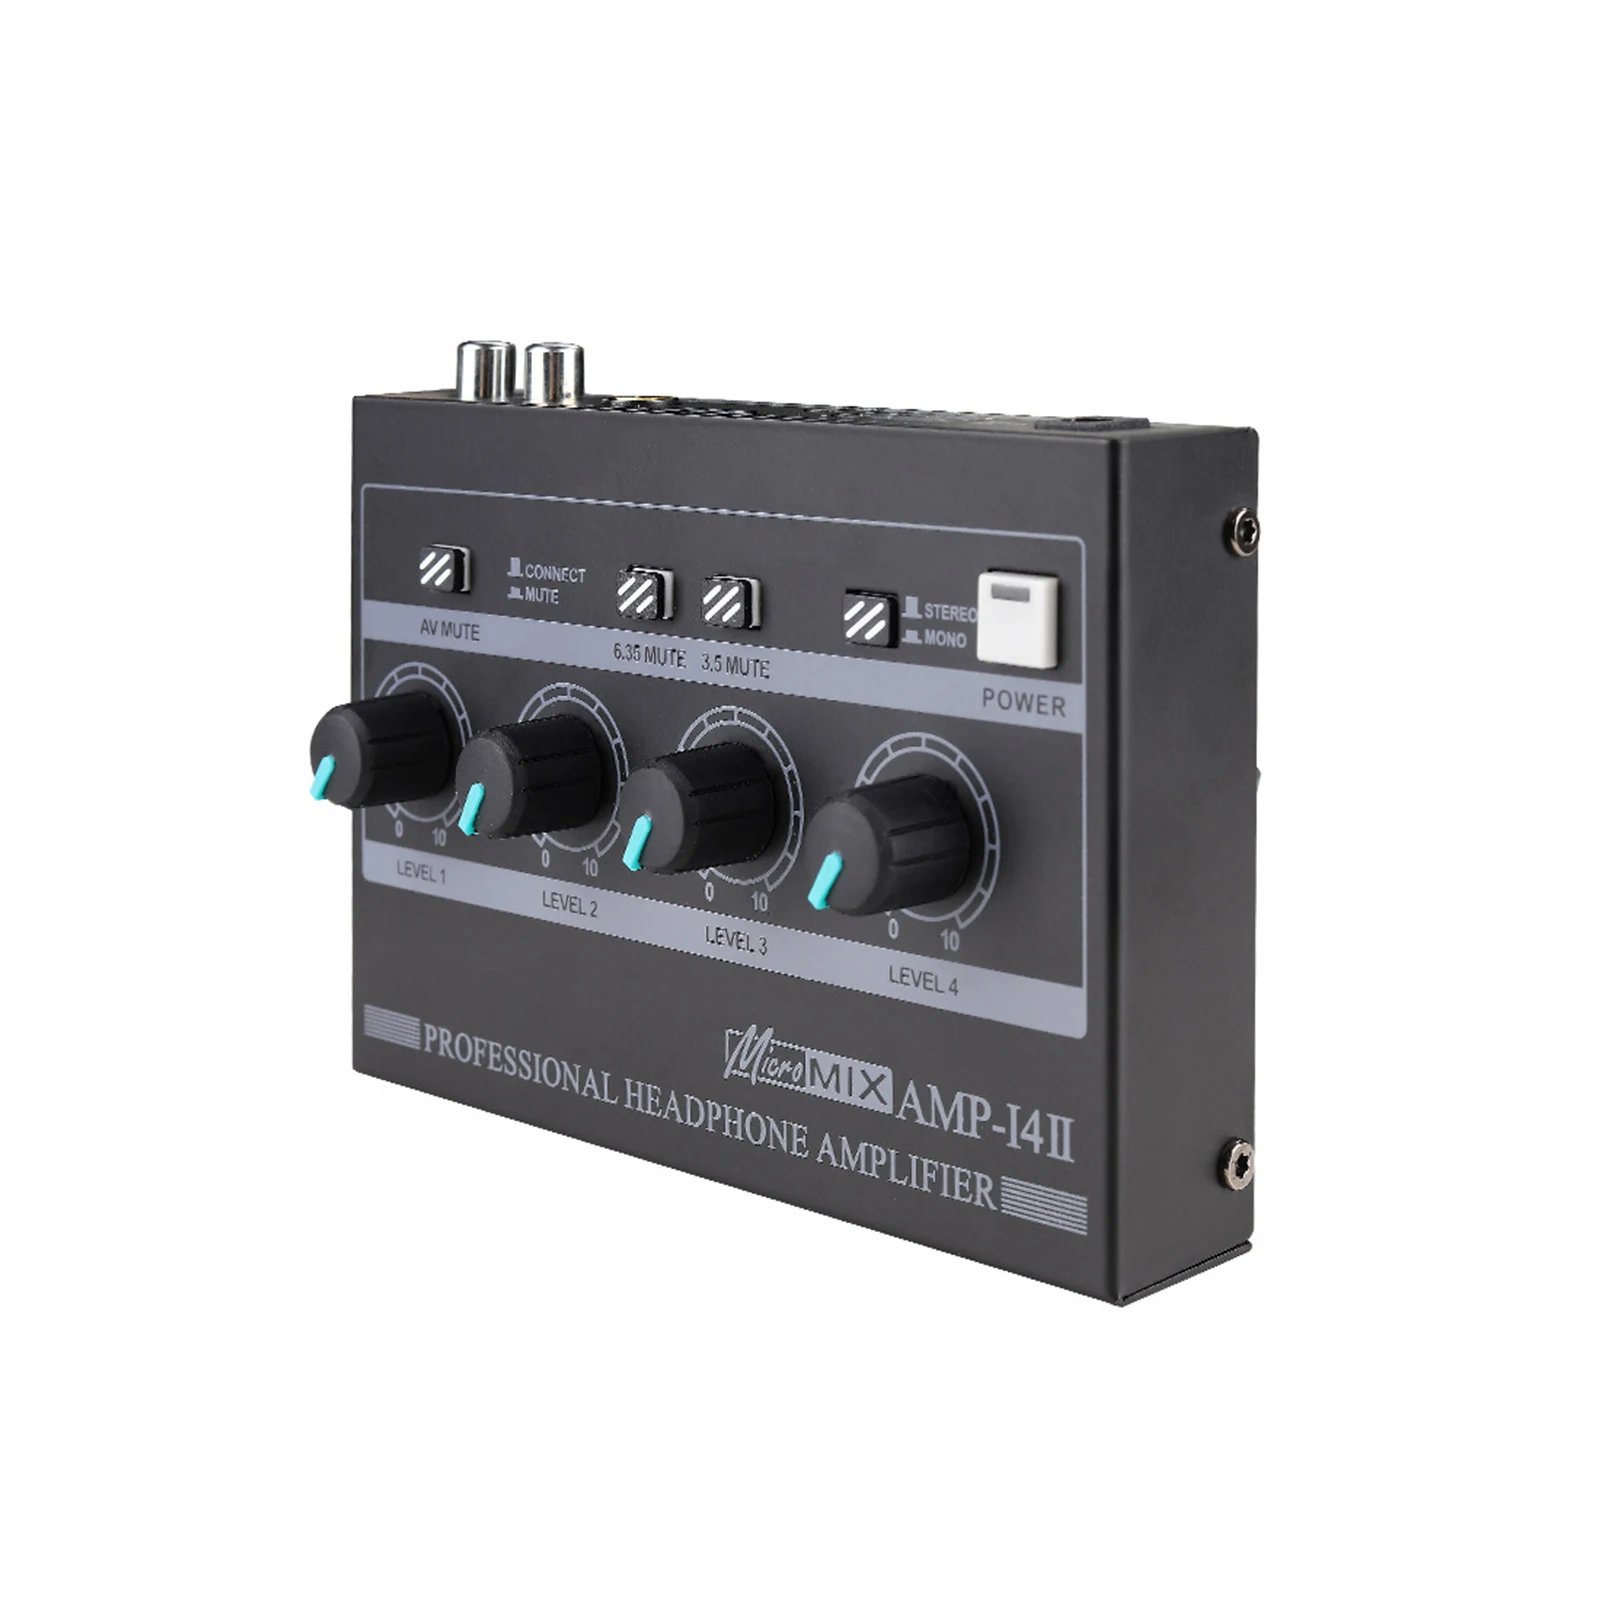 Tanio Ultra Compact Studio Stereo mikser wzmacniacz słuchawkowy sklep